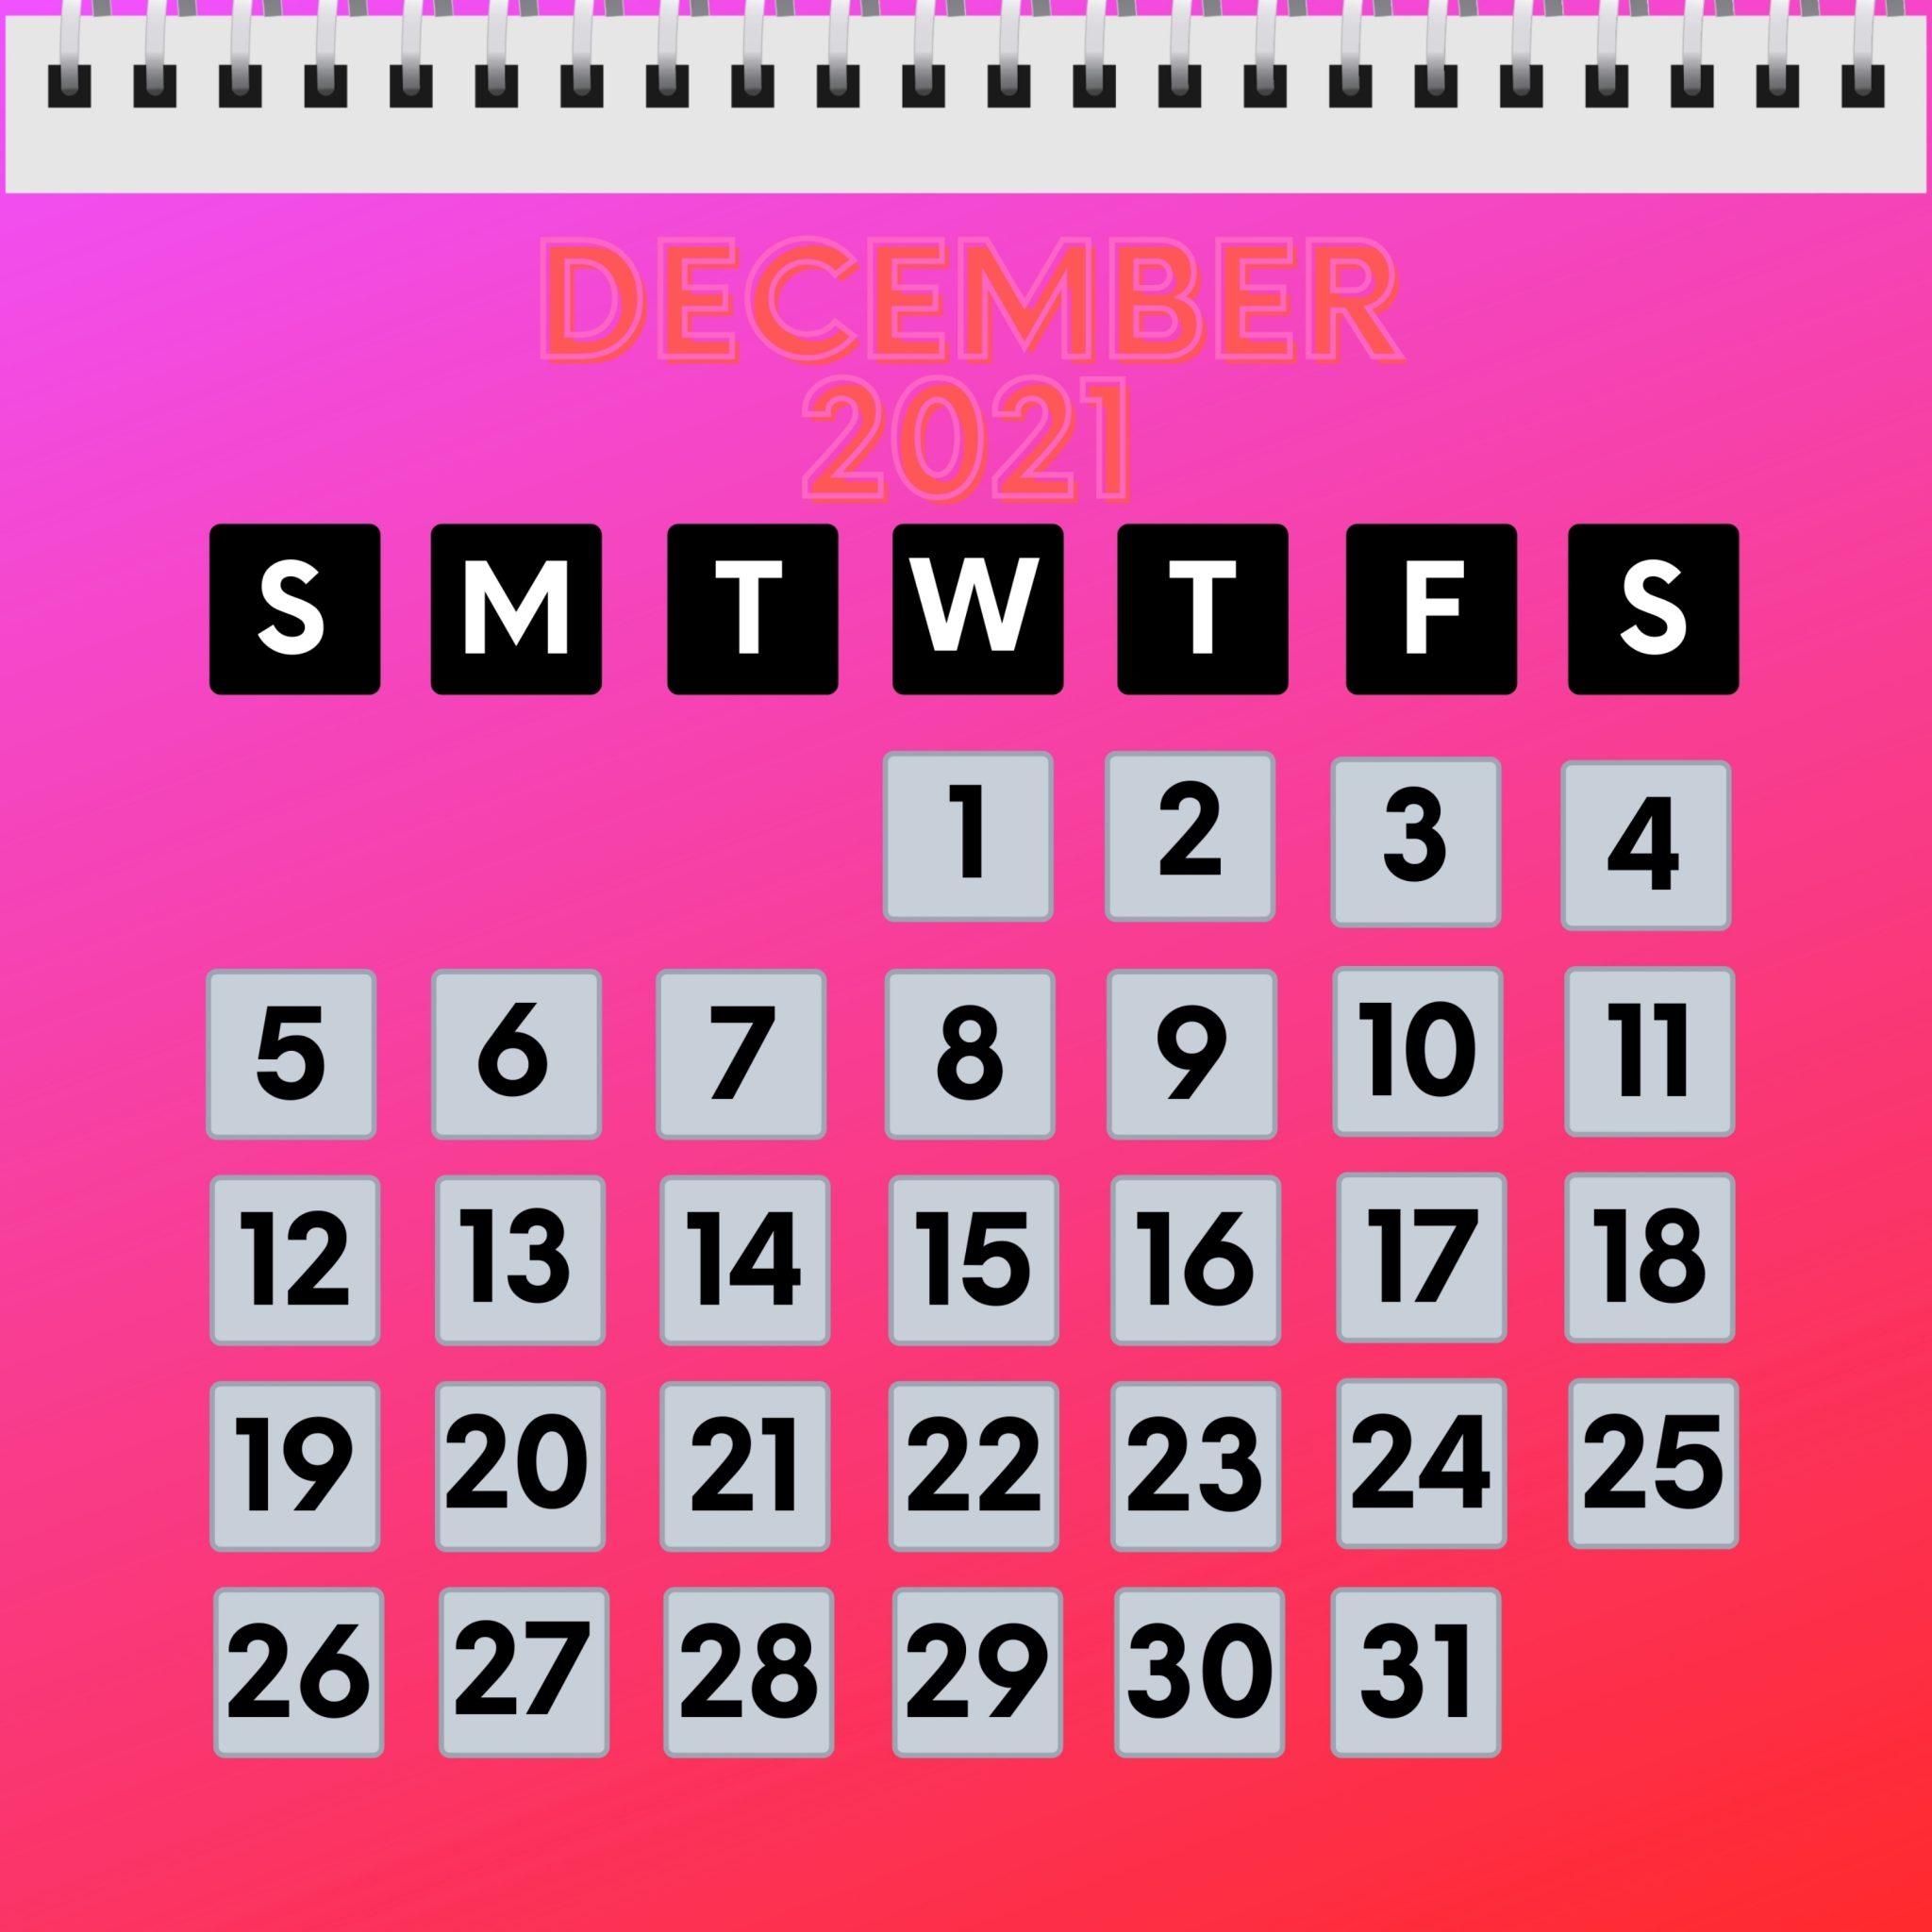 2048x2048 wallpapers iPad retina December 2021 Calendar iPad Wallpaper 2048x2048 pixels resolution